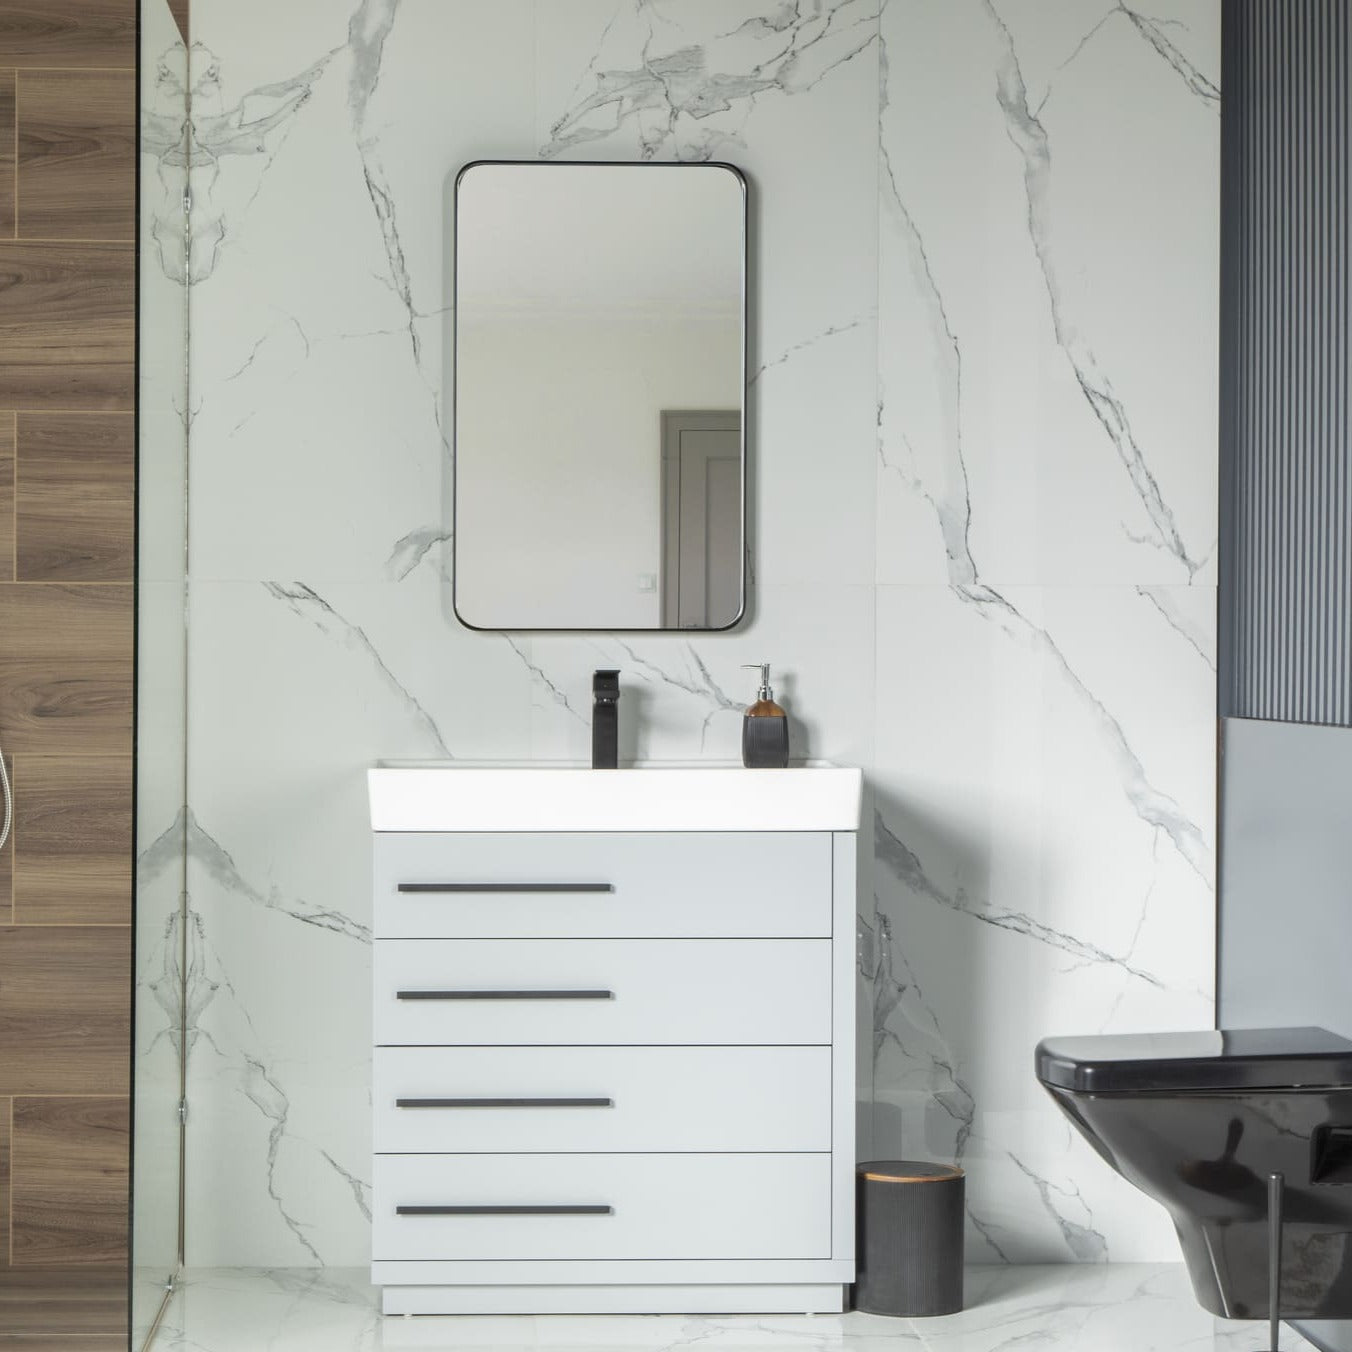 Adora Bathroom Vanity Homelero 32" #size_32" #color_light grey